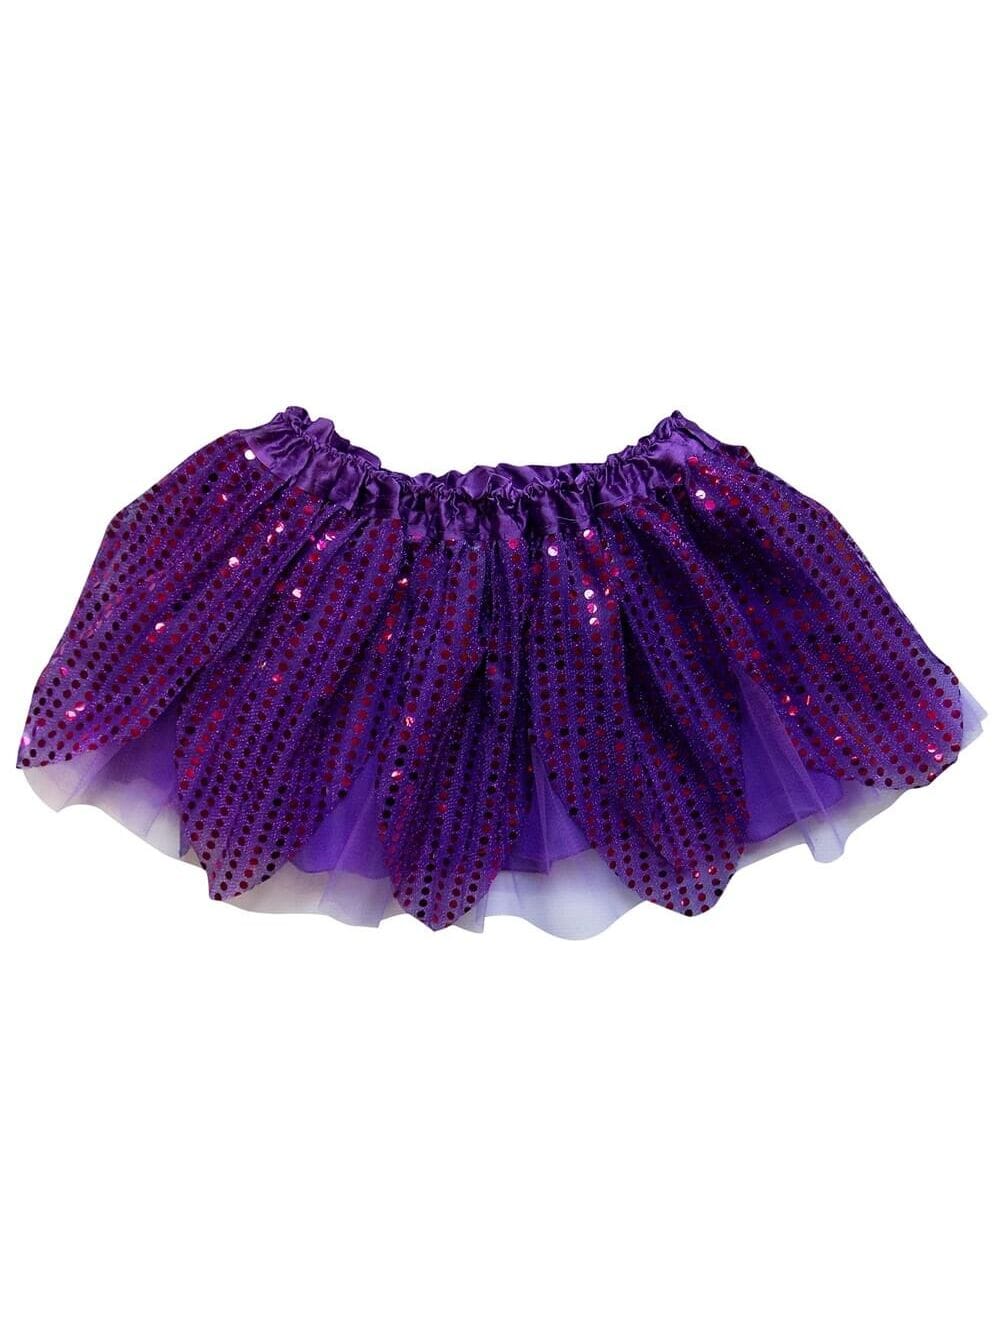 Purple Sparkle Running Tutu Skirt Costume for Girls, Women, Plus - Sydney So Sweet